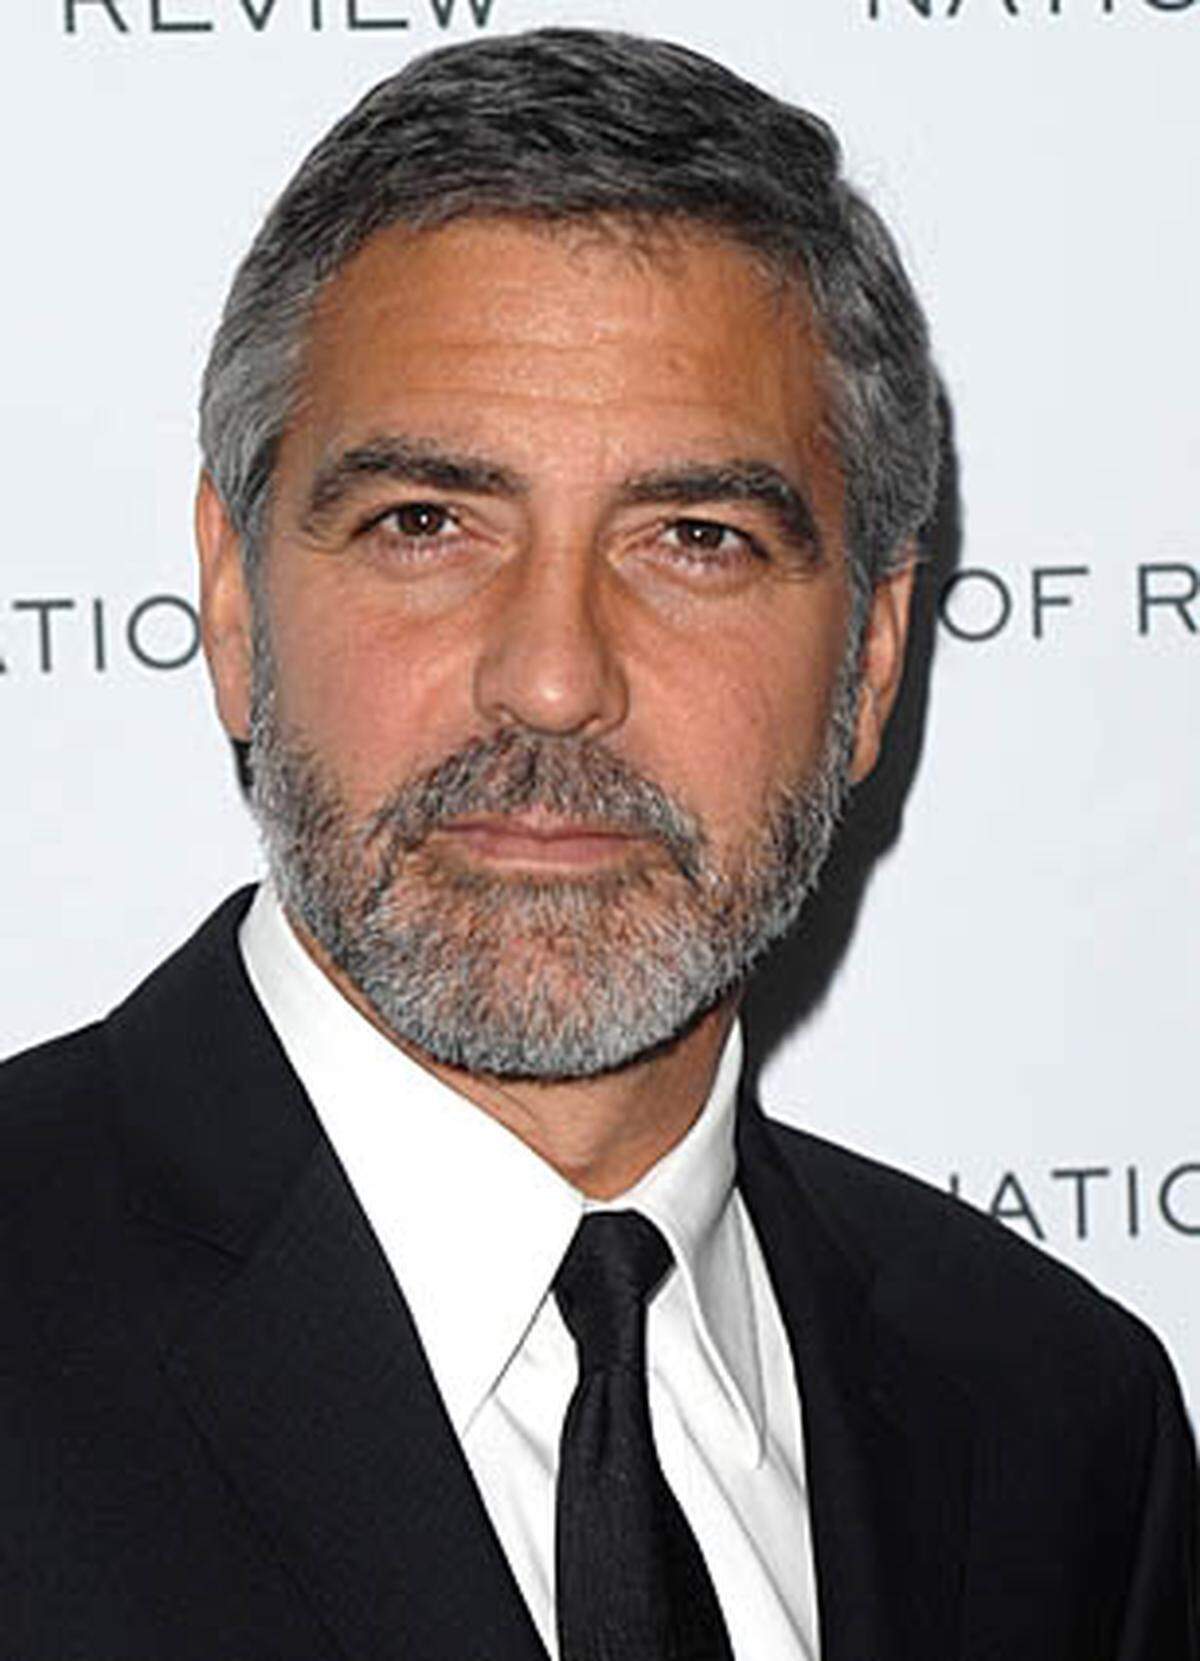 Eine ganze Show zum Sammeln von Spenden will George Clooney abhalten. Er plant eine große TV-Spendenaktion beim US-Sender MTV, die der Schauspieler moderieren soll. Dafür hat er angeblich schon prominente Freunde und Stars, etwa den Musiker Sting, gewonnen.  Mit so viel sozialem Engagement steht Clooney nicht alleine da. In Dunstkreis der Promis verstecken sich nämlich ein paar Wohltäter ...